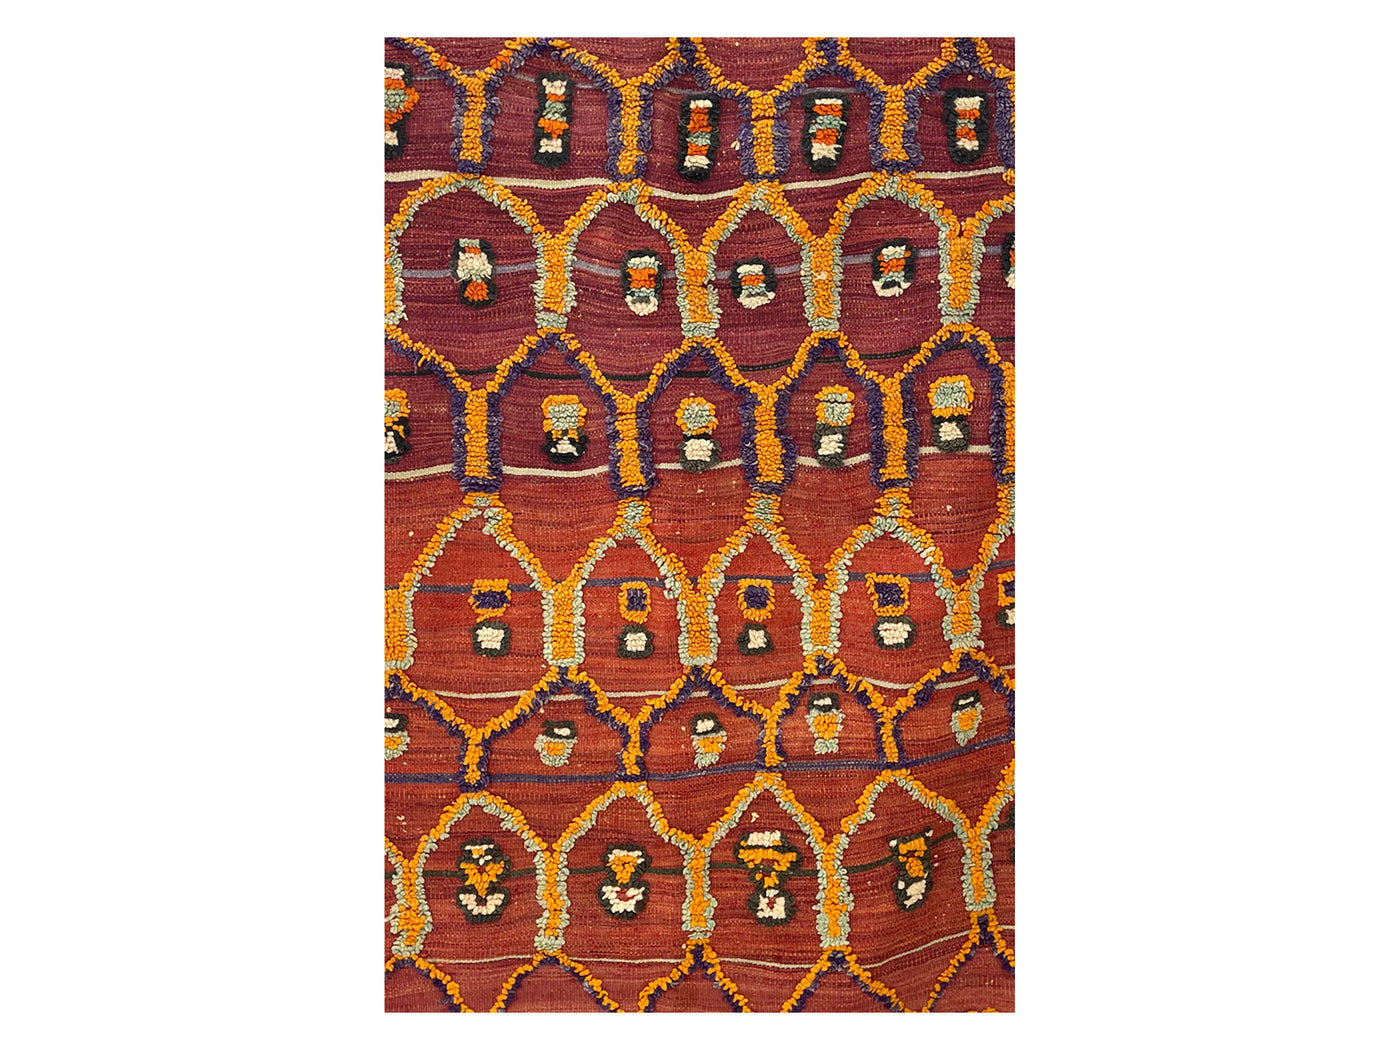 Vintage Moroccan Rug -  Fdaa Talsint Morocco Collection